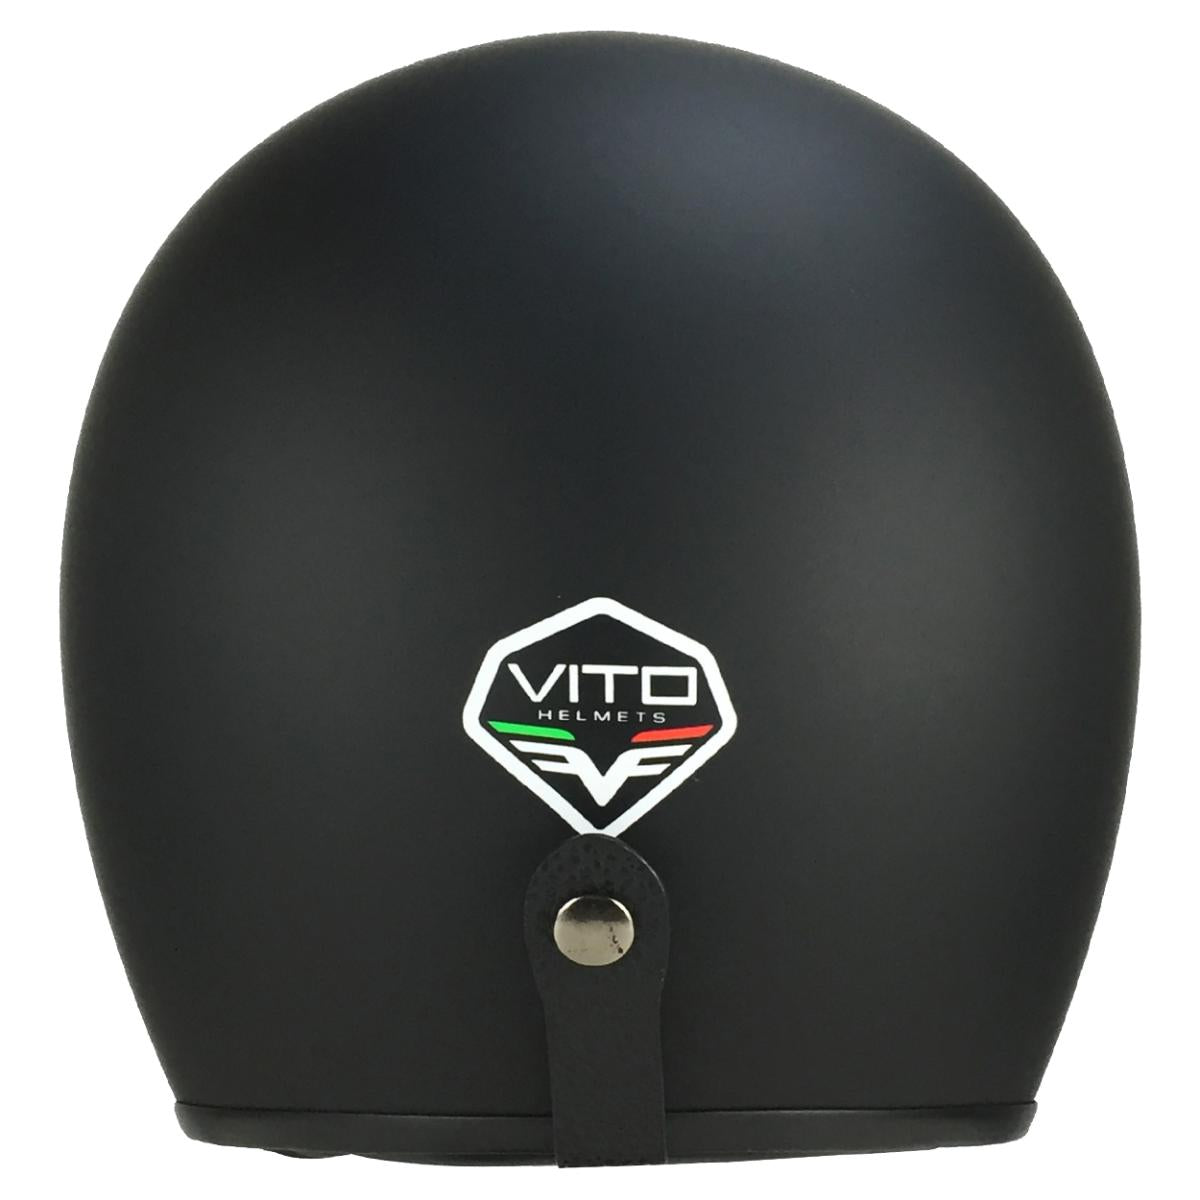 Casco Moto Abierto Jet Vito Grande Negro - URA Moto